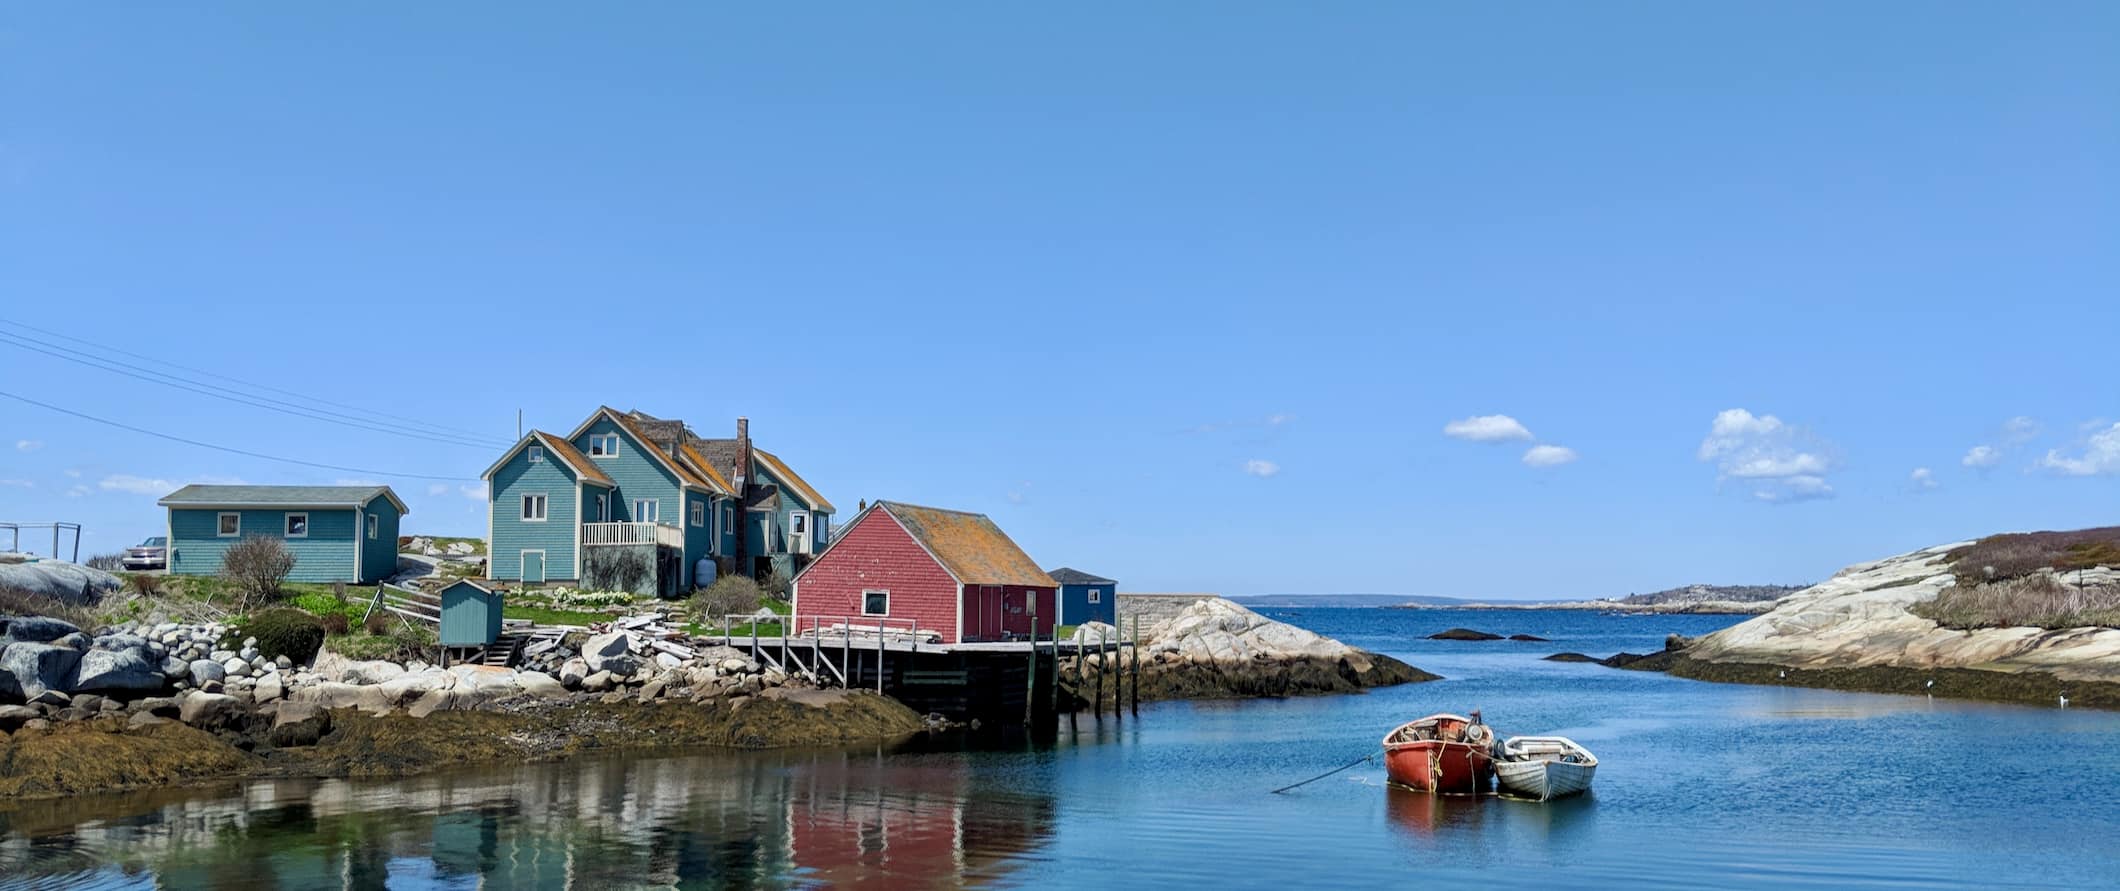 A quaint house along the rugged coast of sunny Nova Scotia, Canada